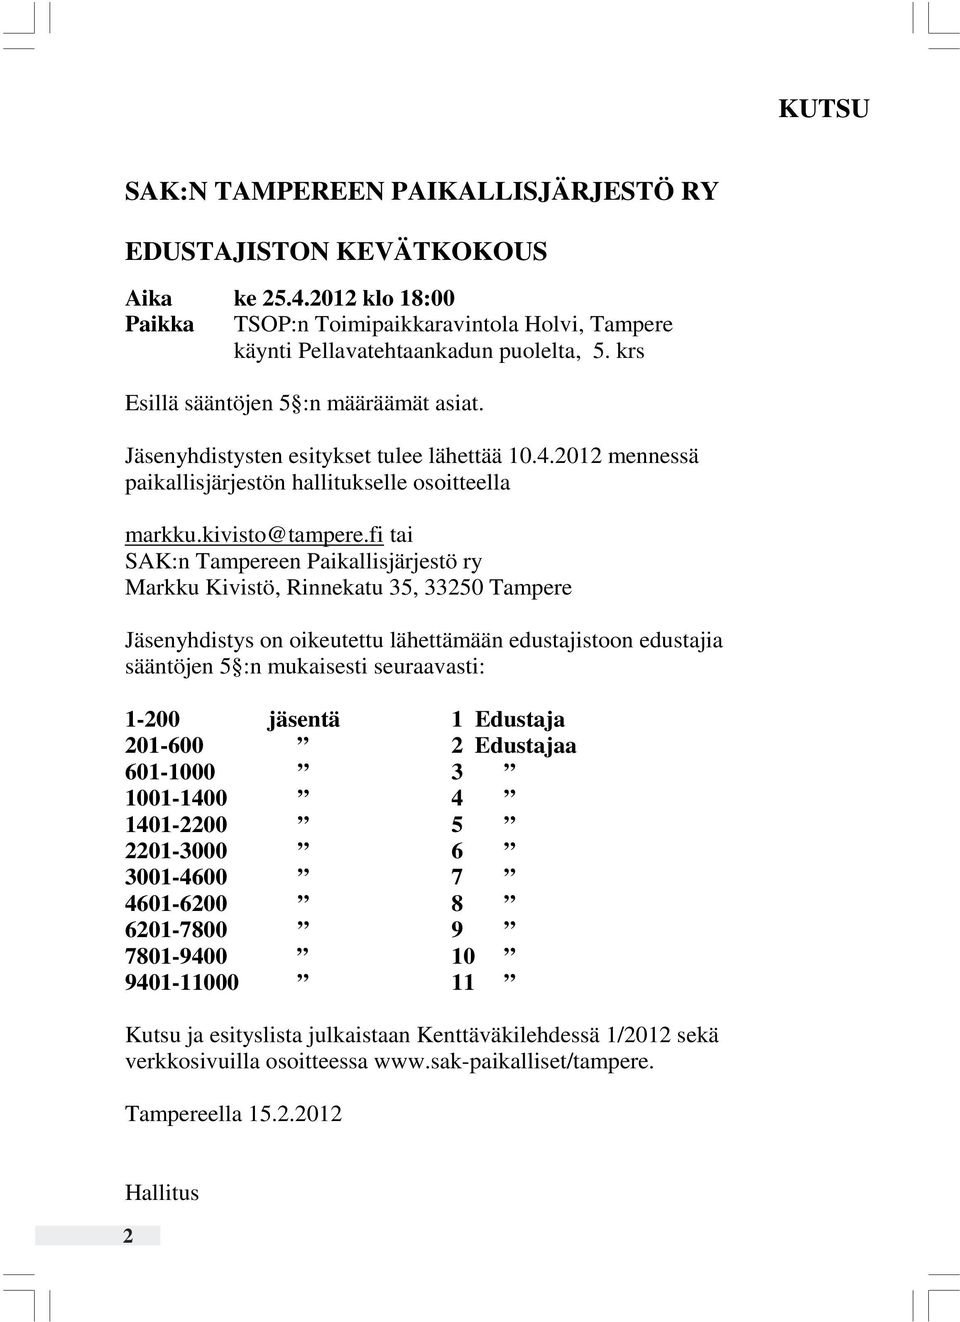 fi tai SAK:n Tampereen Paikallisjärjestö ry Markku Kivistö, Rinnekatu 35, 33250 Tampere Jäsenyhdistys on oikeutettu lähettämään edustajistoon edustajia sääntöjen 5 :n mukaisesti seuraavasti: 1-200